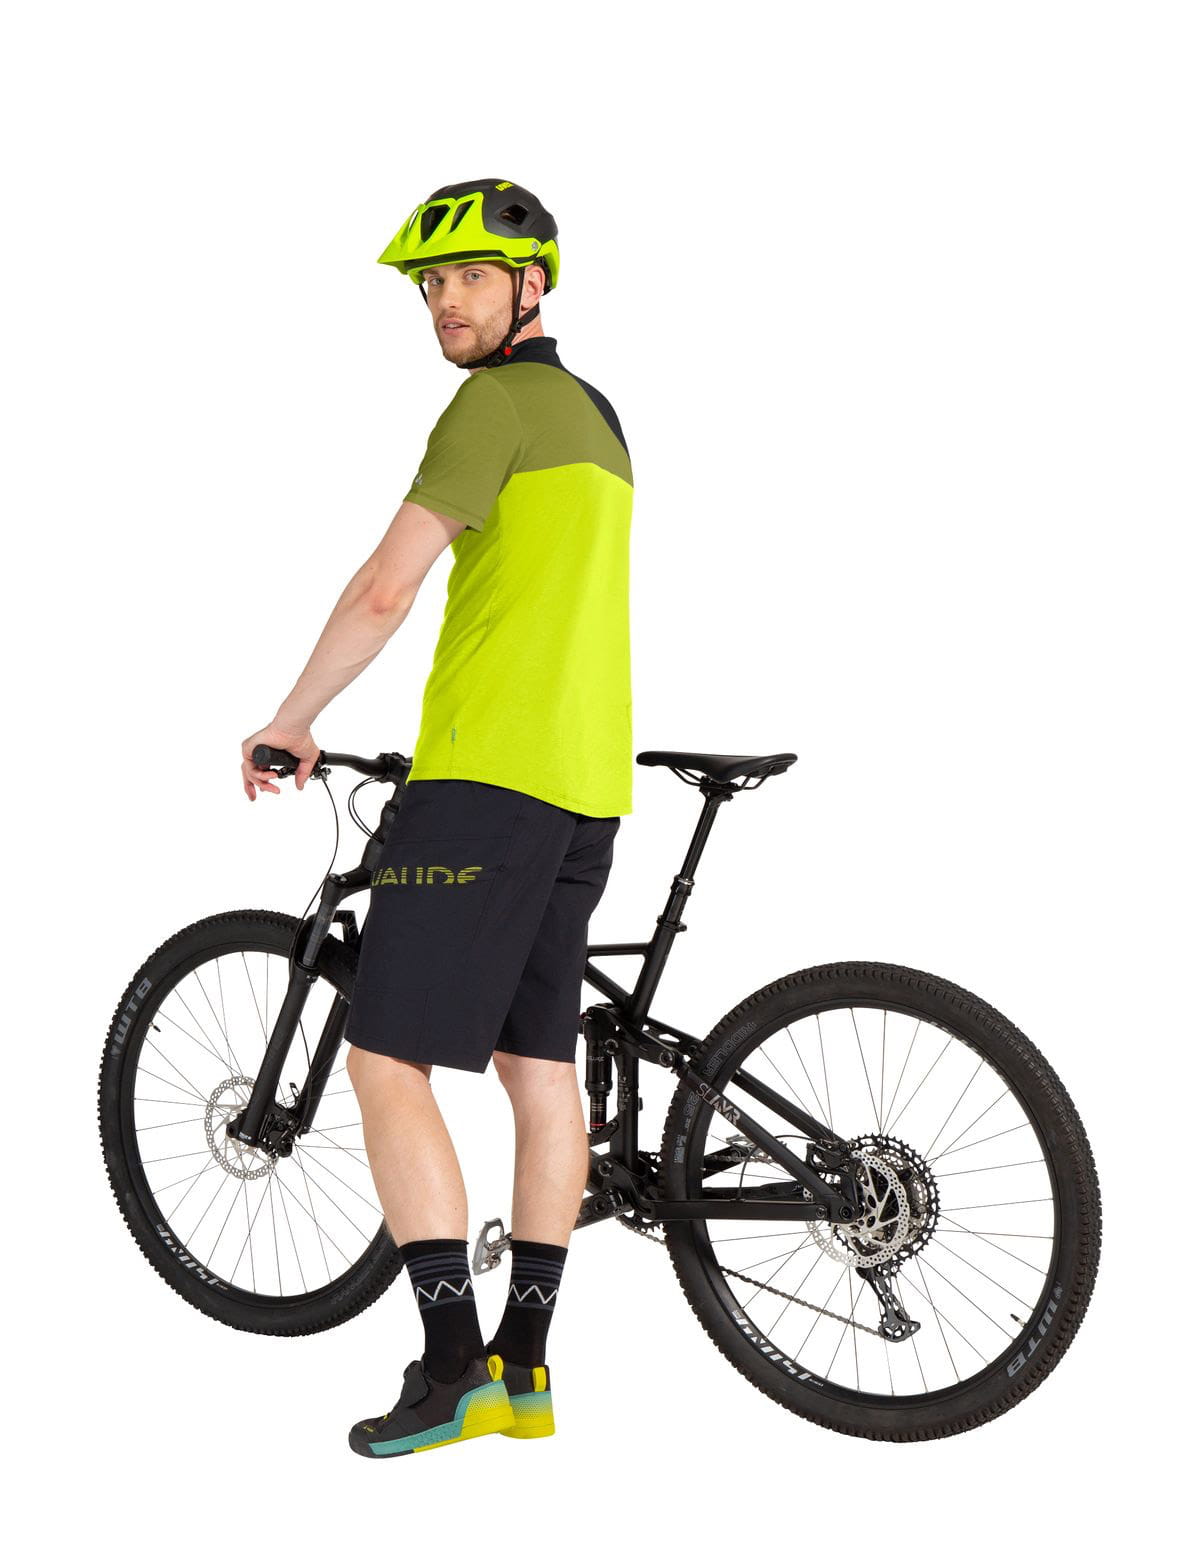 VAUDE Mens Altissimo Shorts III Bike Shorts with herausnehmbarer Innenhose